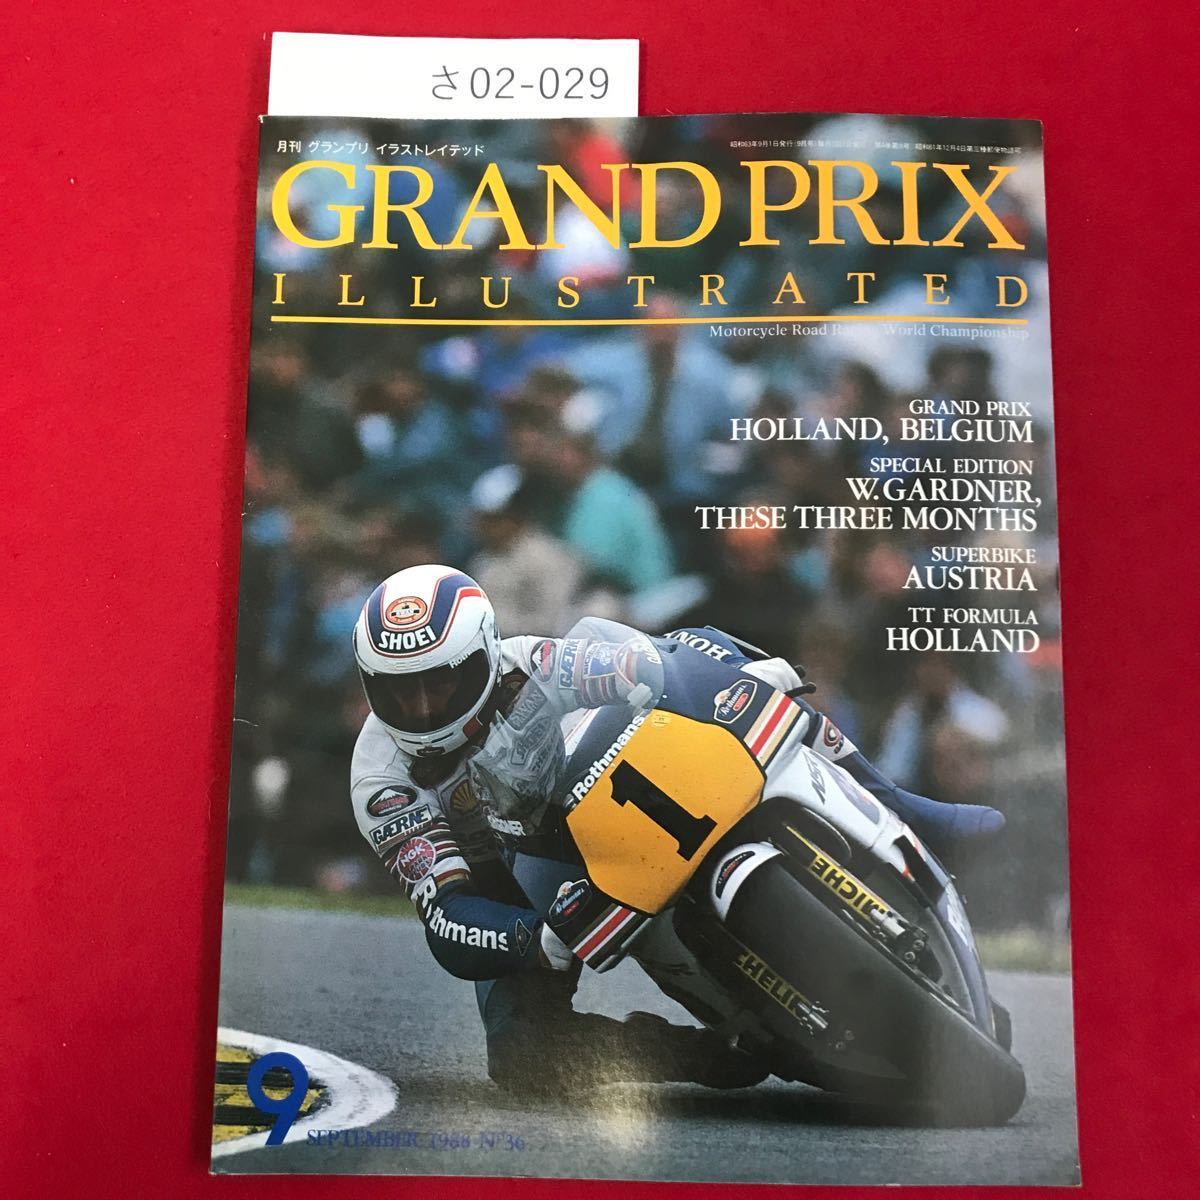 さ02-029 GRAND PRIX ILLUSTRATED GP: オランダ、ベルギー SB:オーストリア W. ガードナー: 初優勝までの道程 SEPTEMBER 1988 N036_画像1